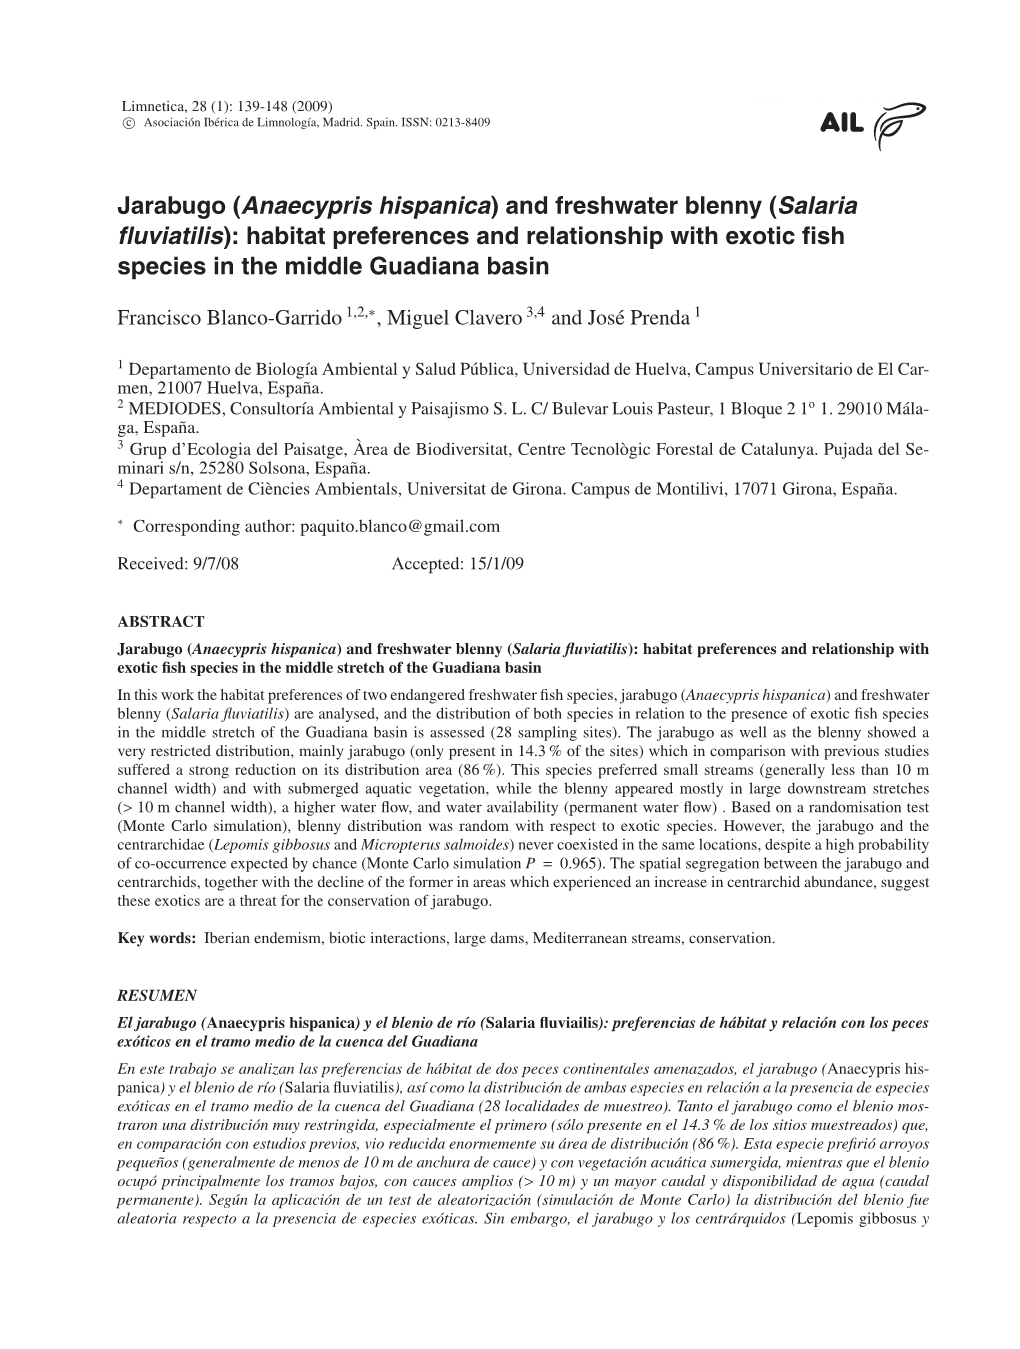 Jarabugo (Anaecypris Hispanica) and Freshwater Blenny (Salaria Uviatilis